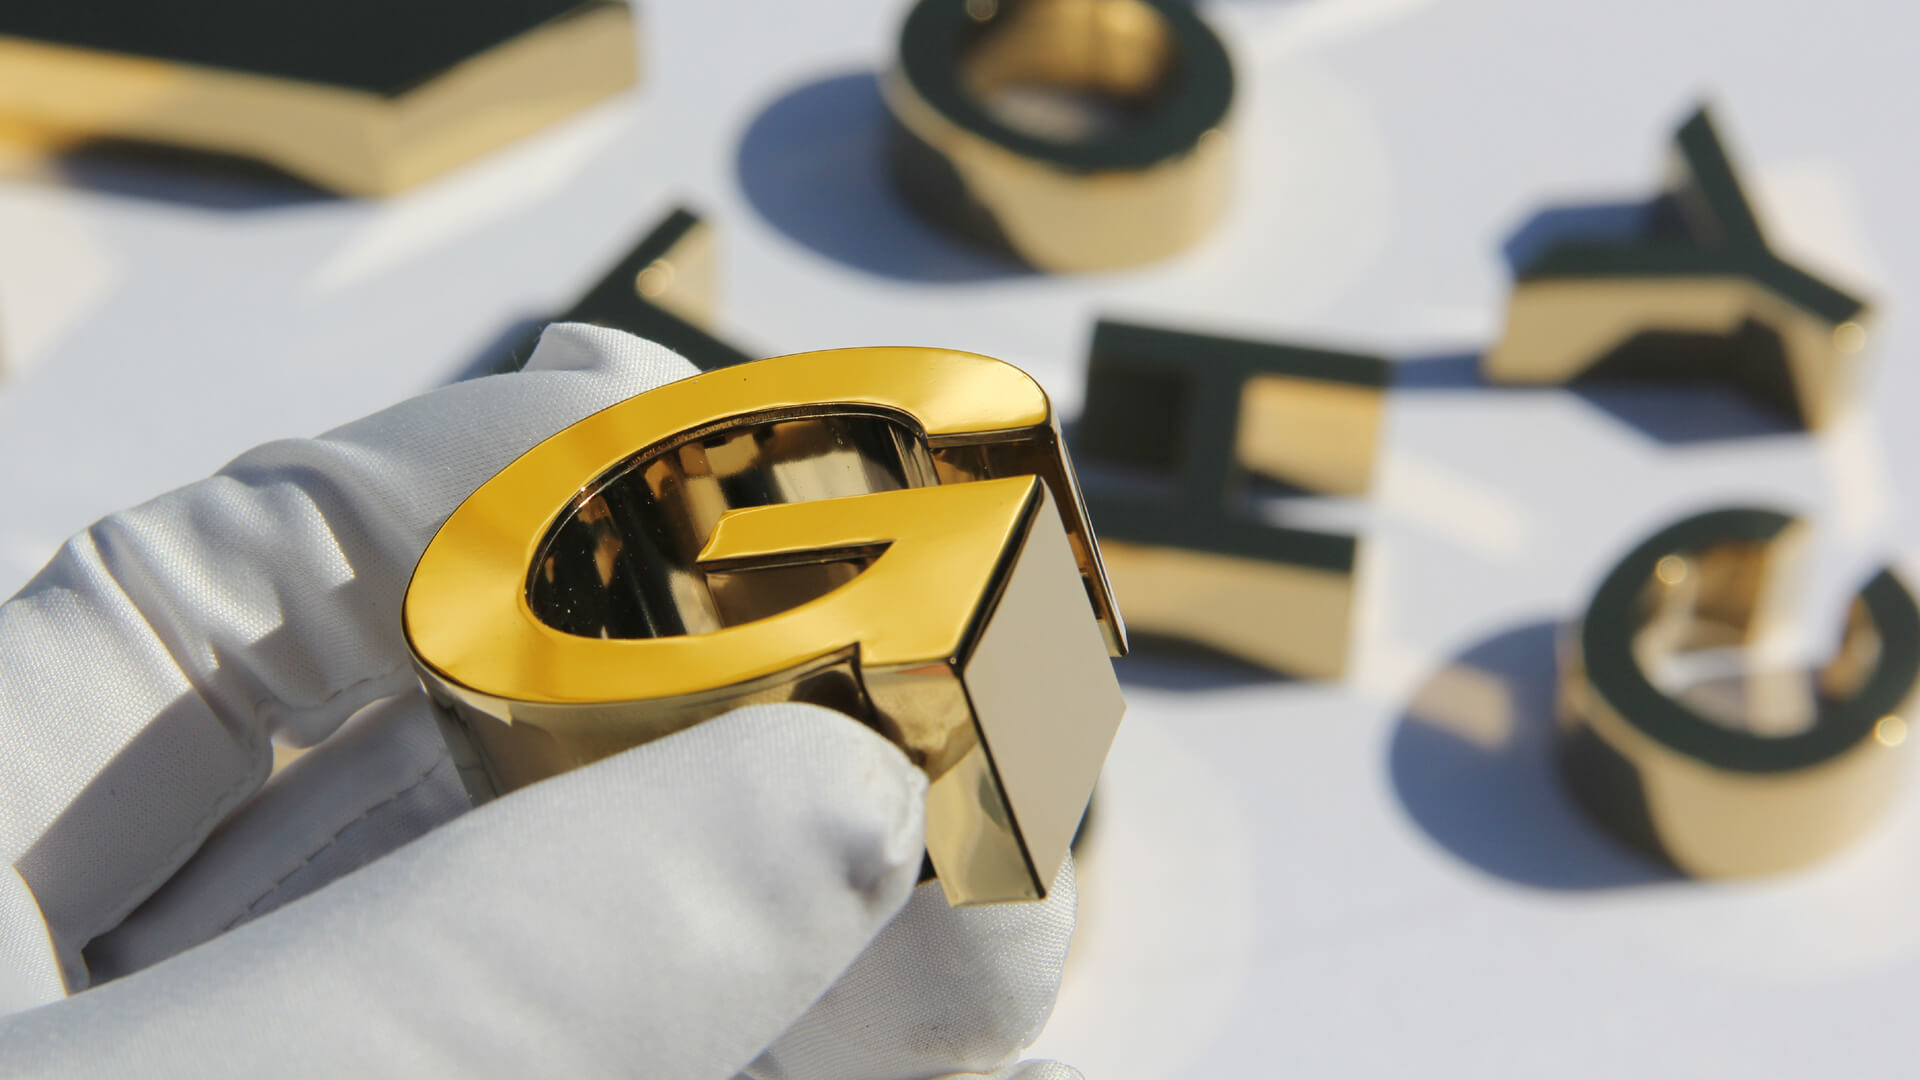 Lettera G - in acciaio inossidabile, lucidato in oro